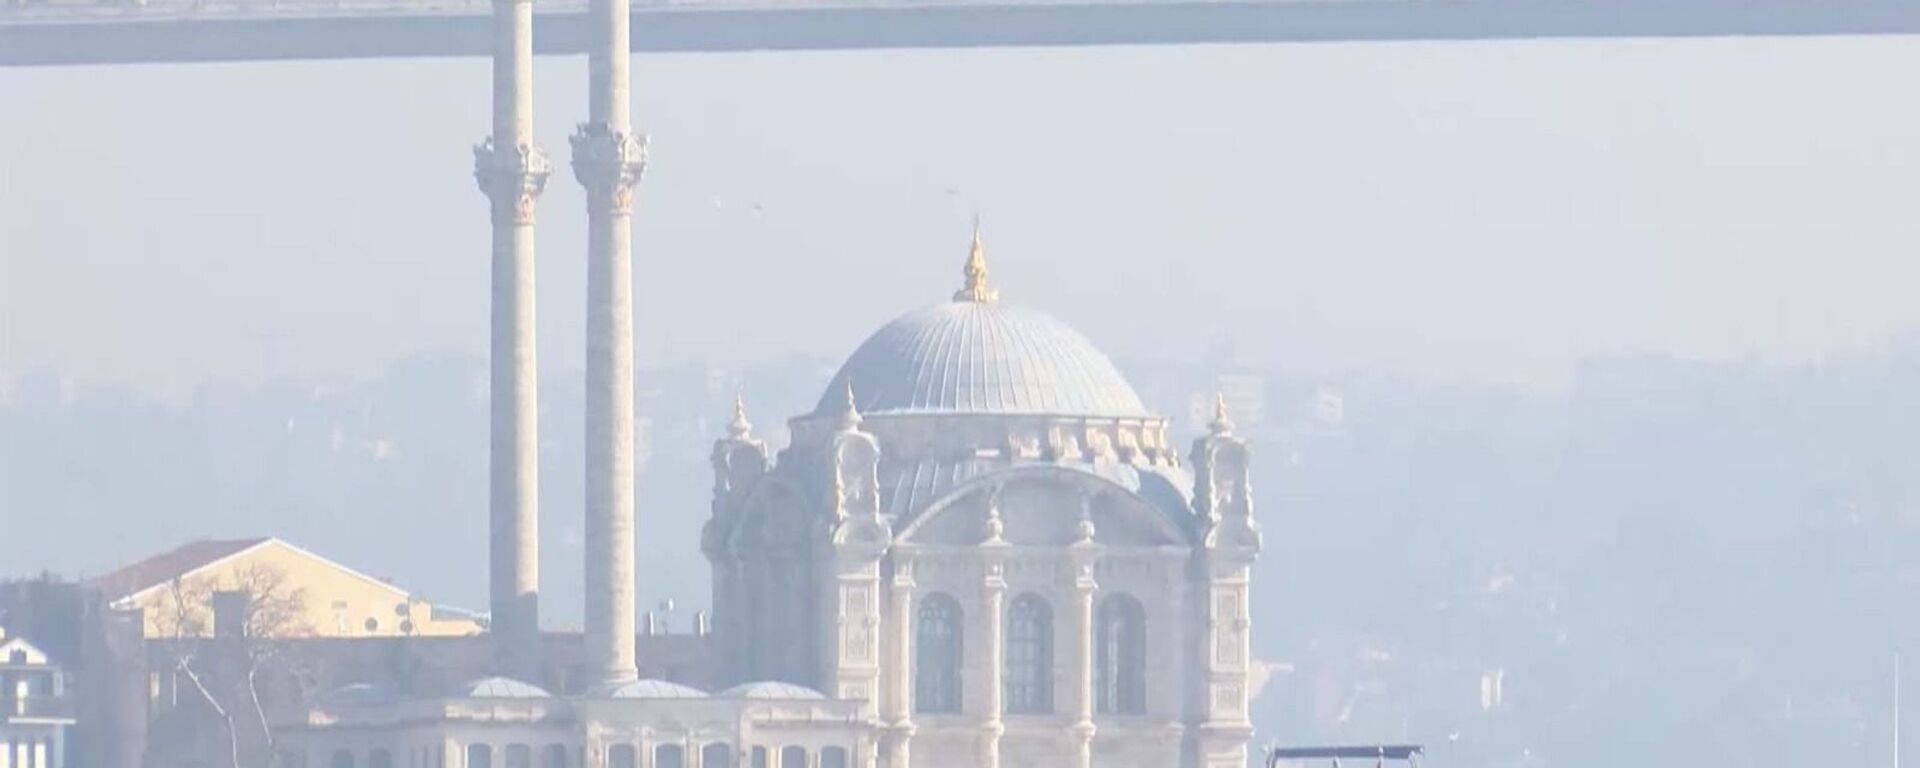 İstanbul hava kirliliği - Sputnik Türkiye, 1920, 24.09.2021